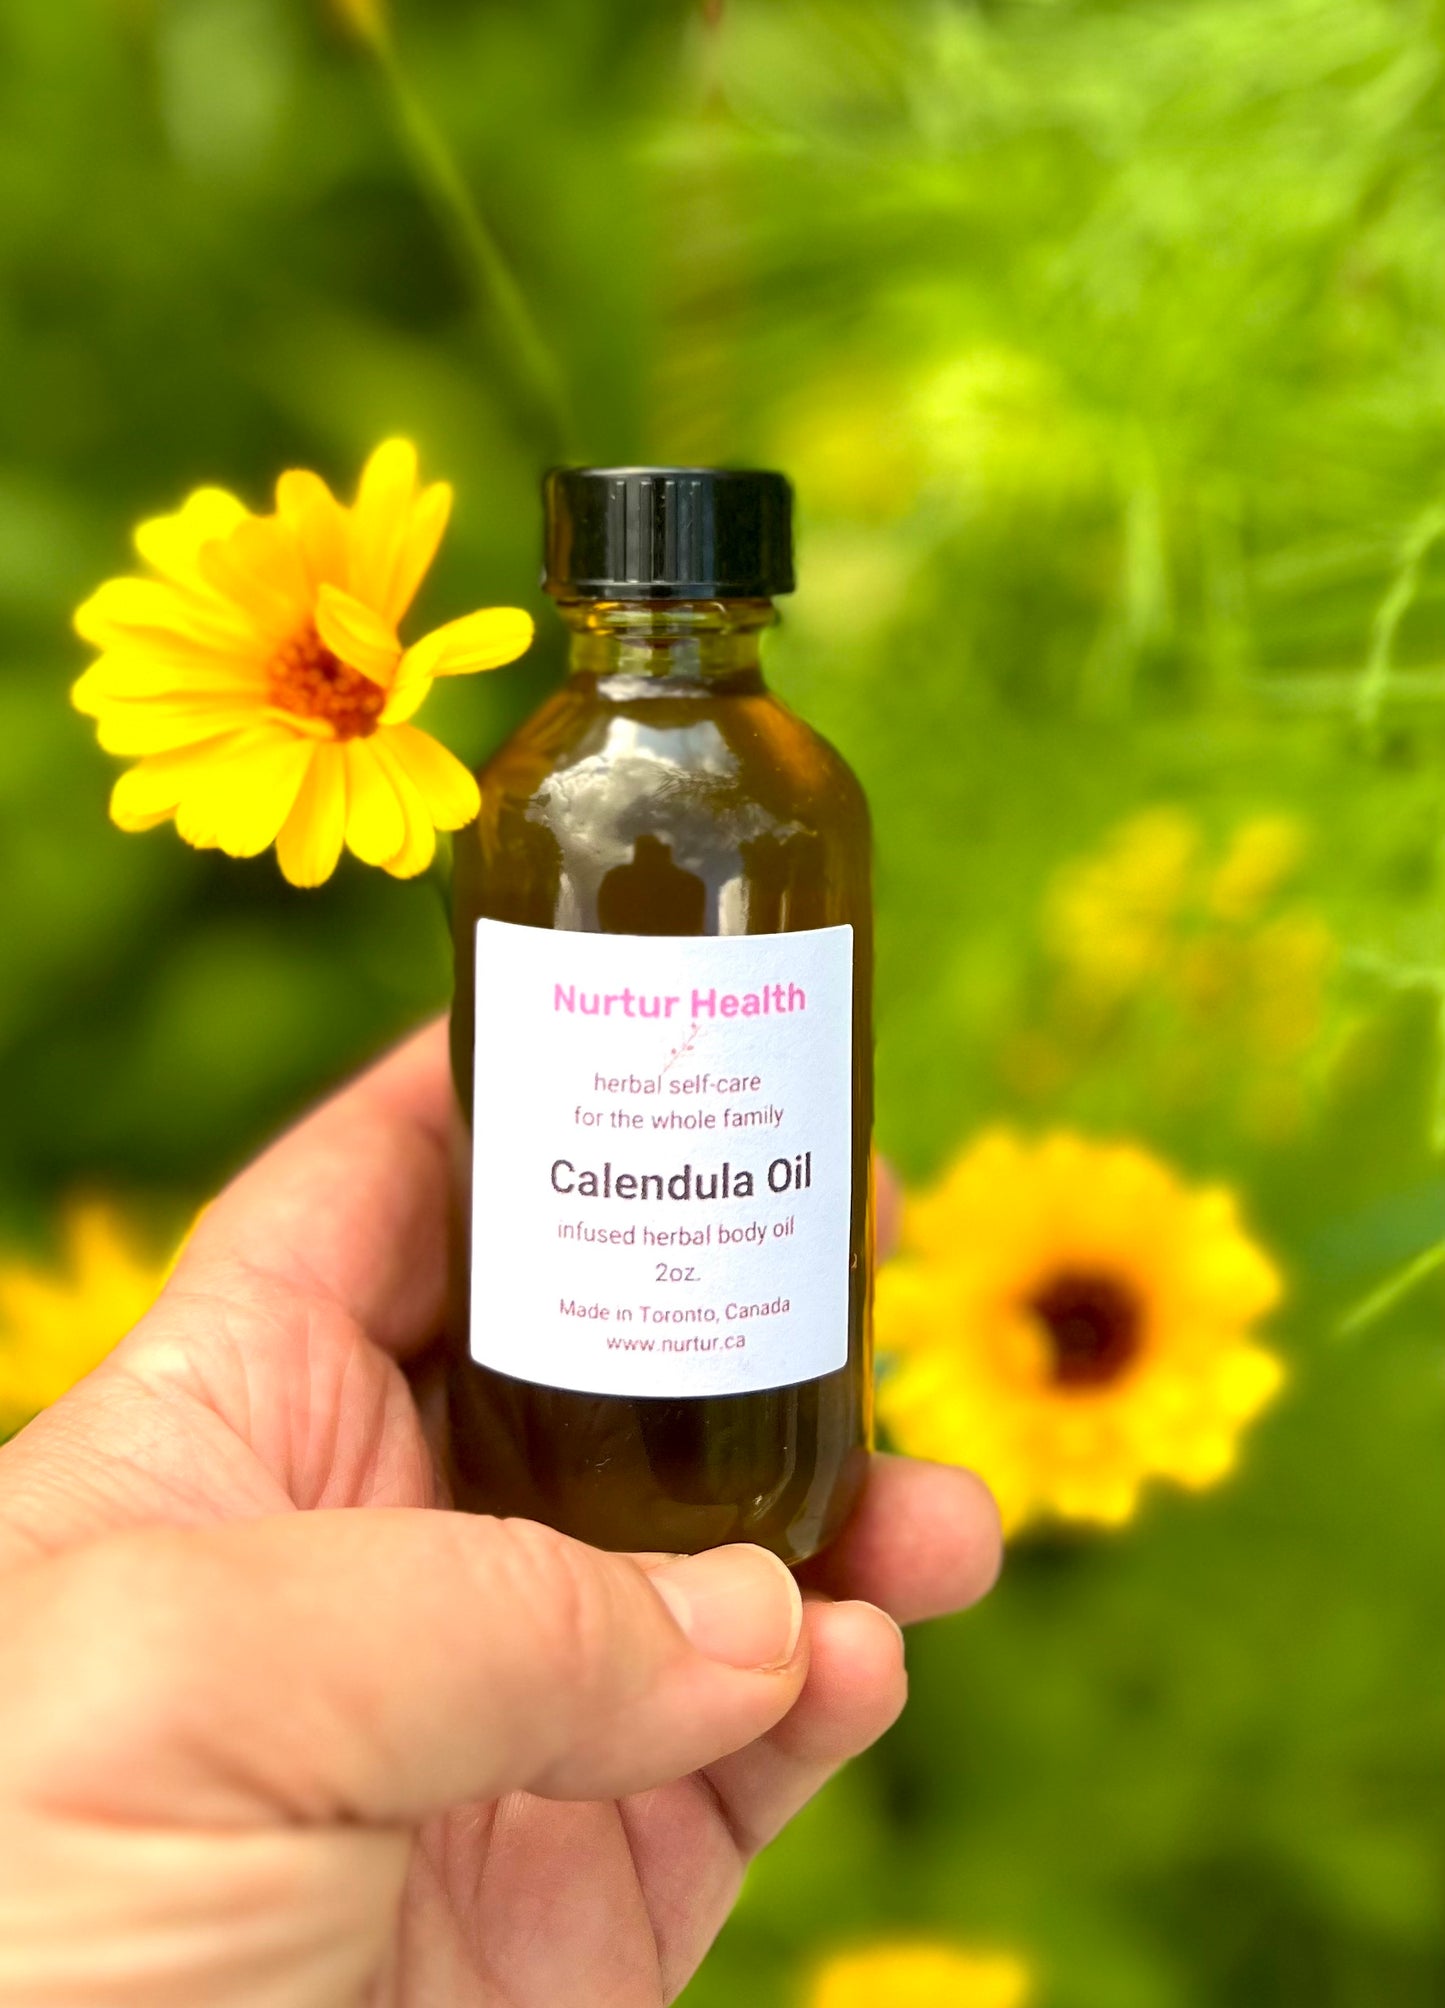 Calendula Herbal Oil